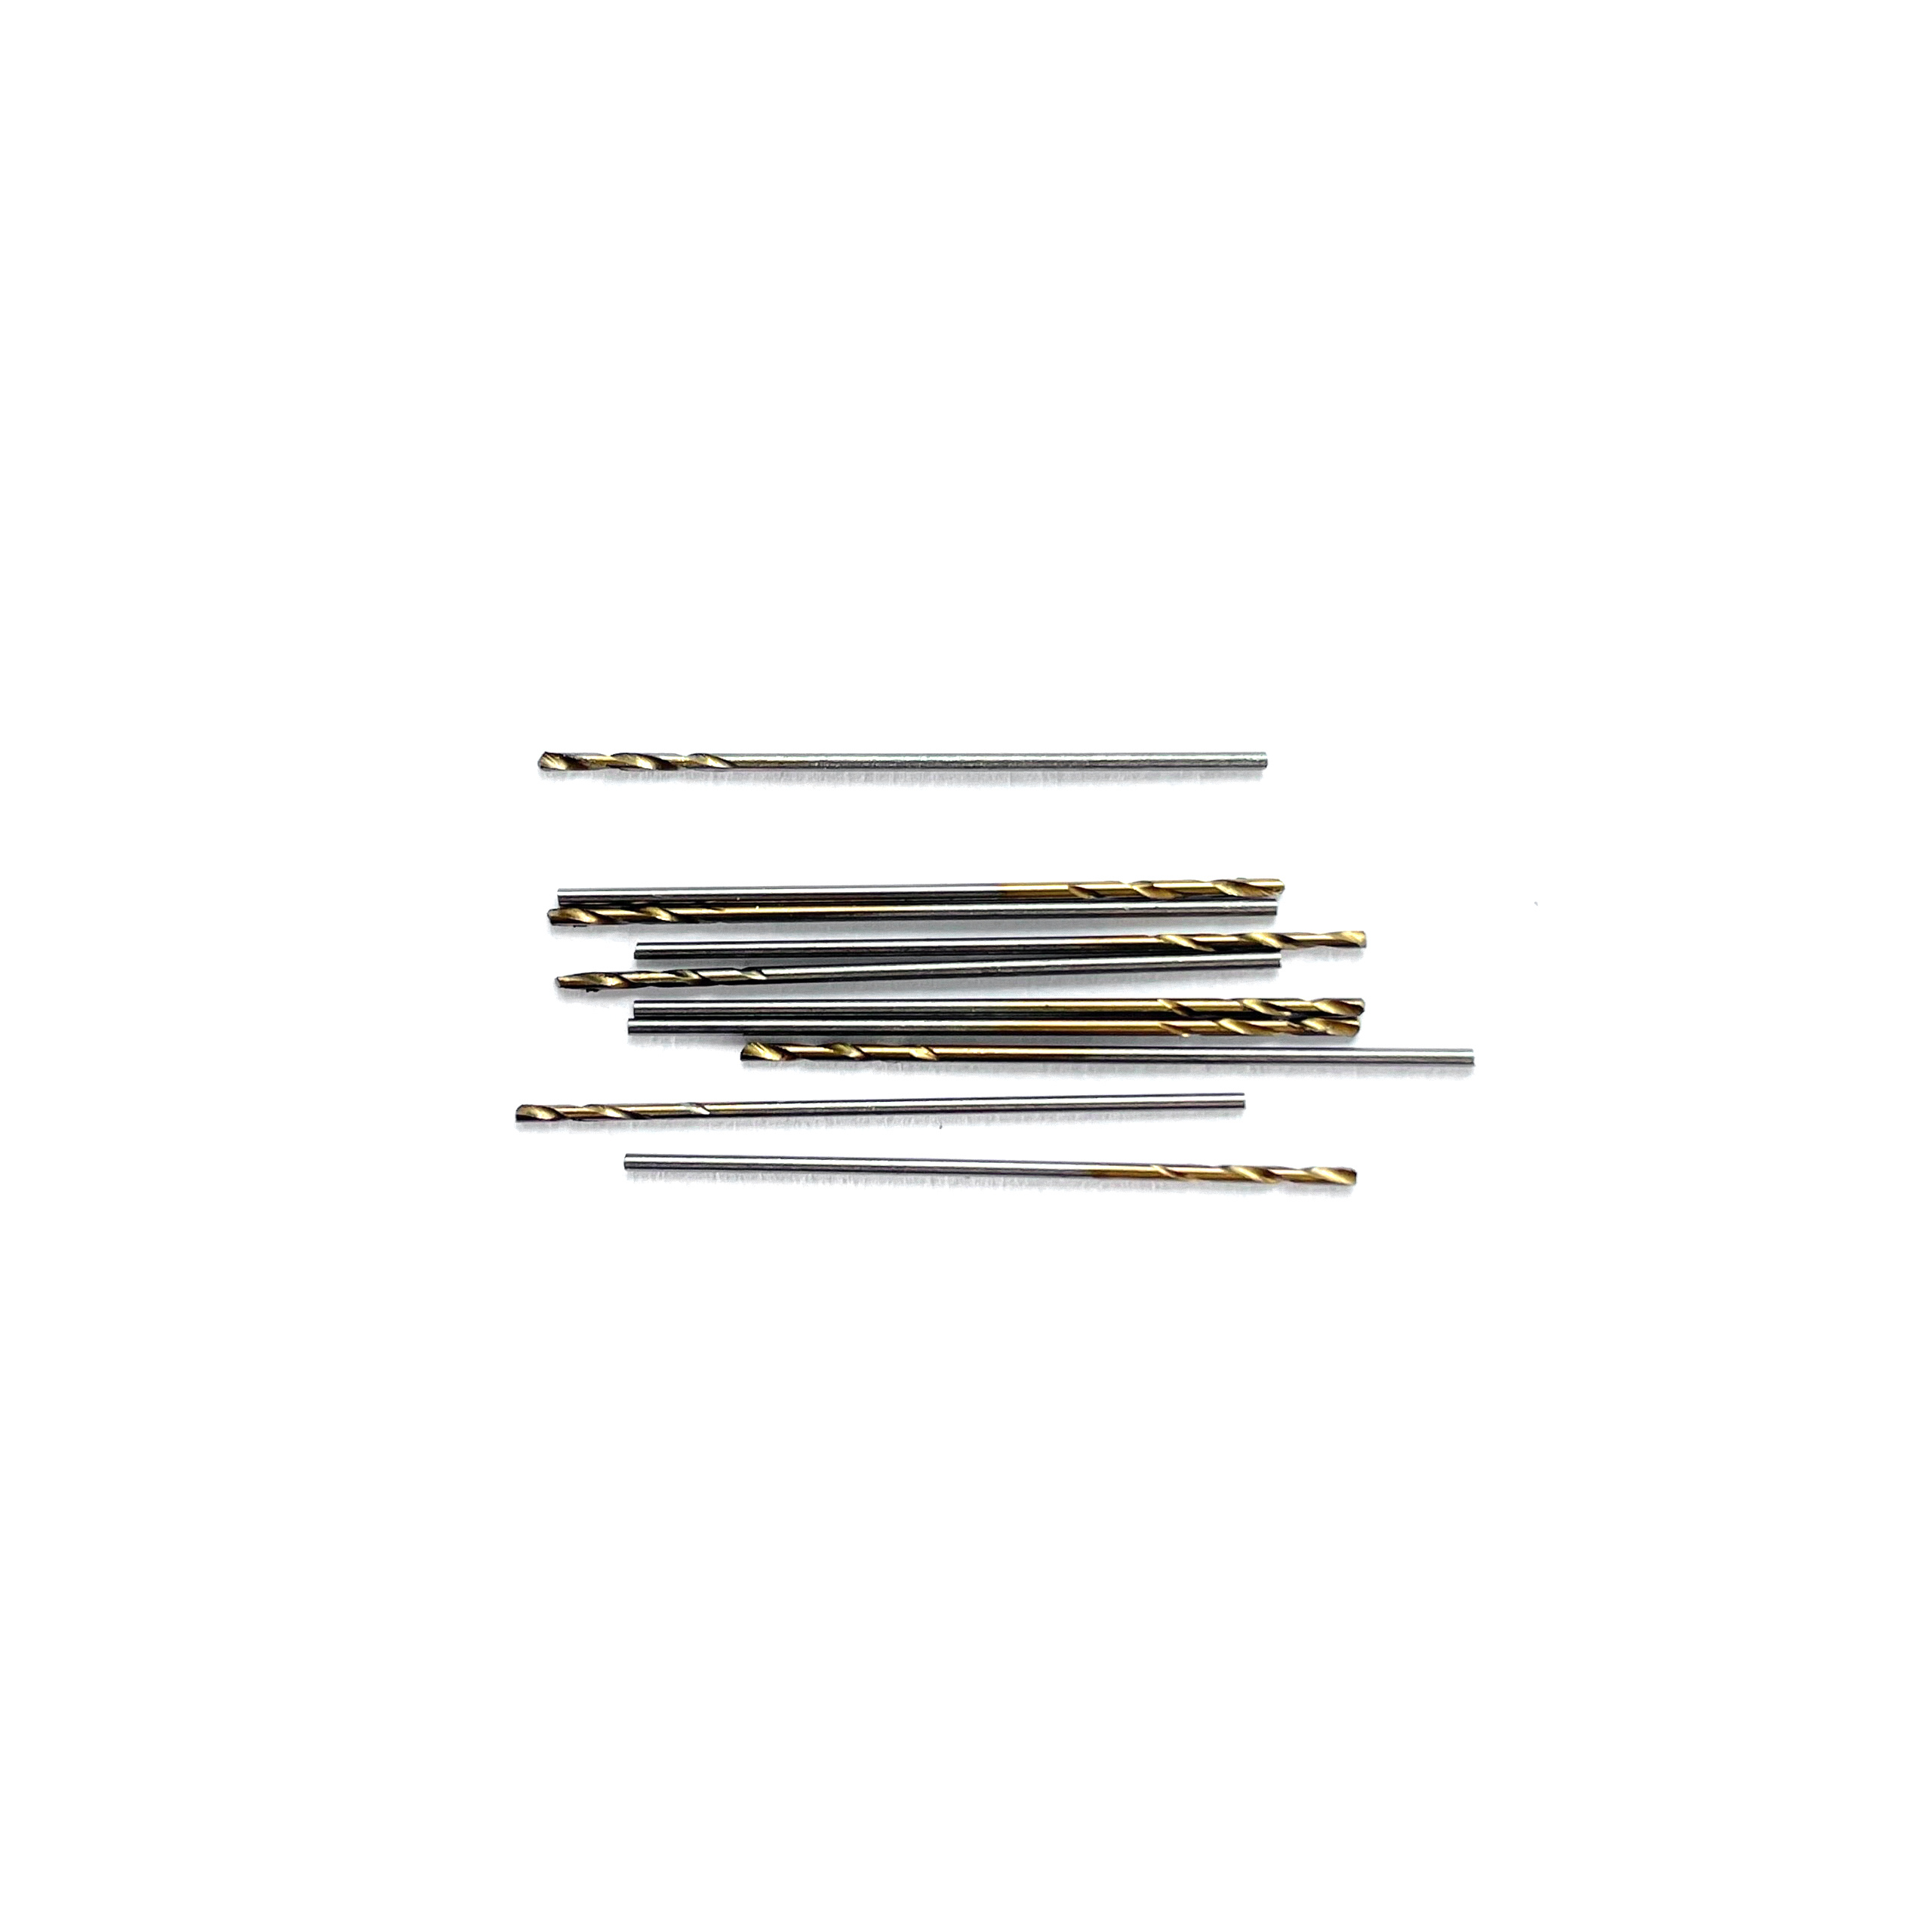 42560 JAS Mini drill HSS 6542 (M2) titanium coated d 0.55 mm 10 pcs.